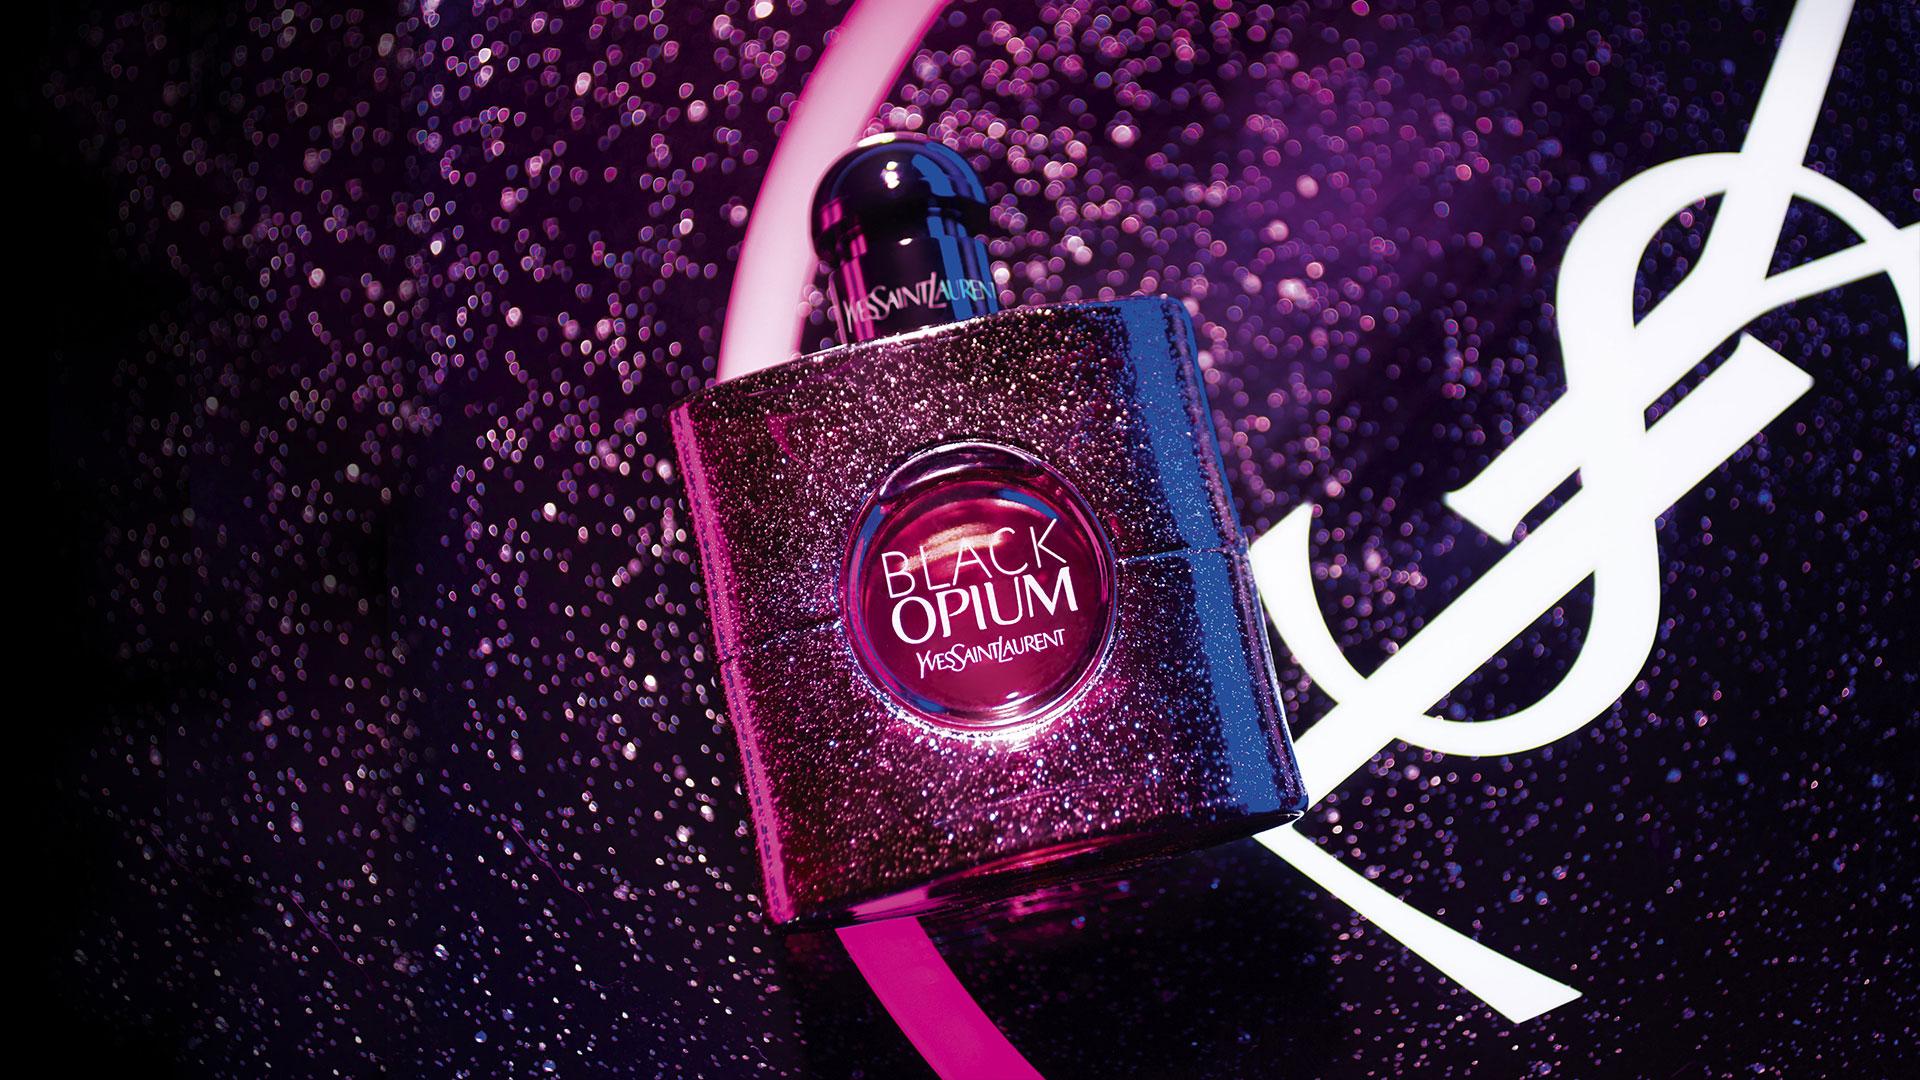 Black Opium Eau de Toilette (2018) Yves Saint Laurent perfume